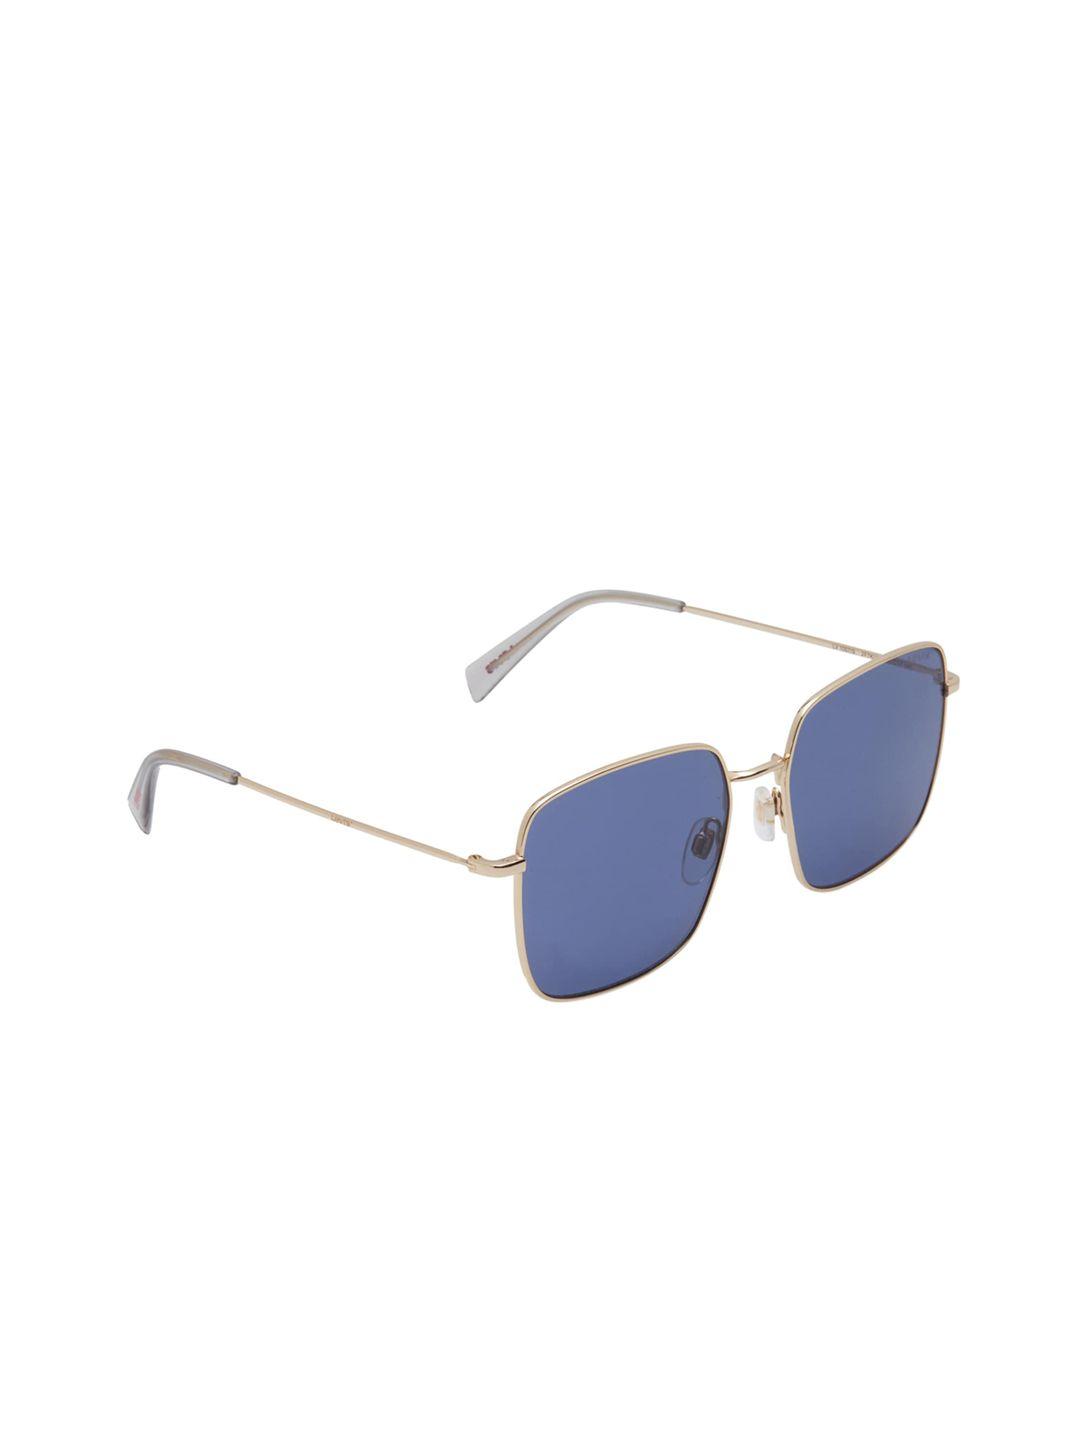 levis-women-blue-square-uv-protected-sunglasses-lv-1007/s-2f7-56ku